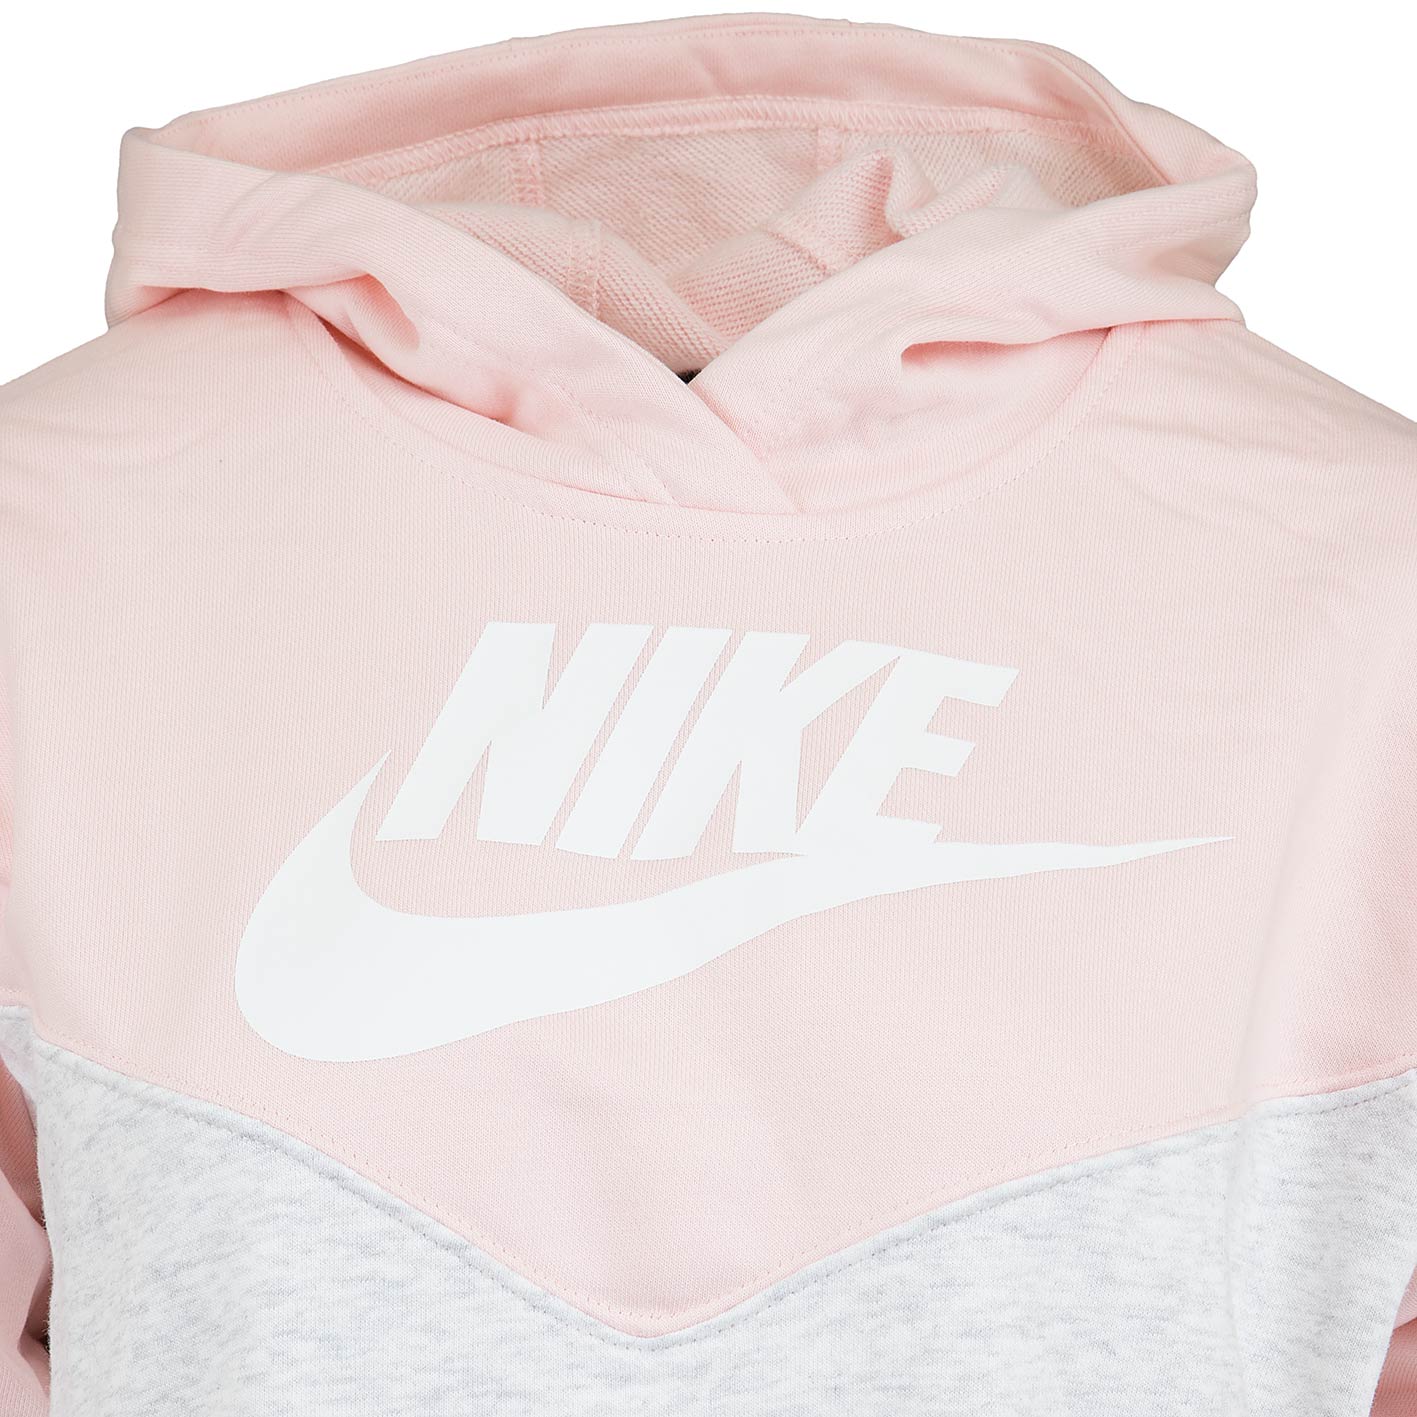 ☆ Nike Damen Hoody Heritage pink/weiß/grau - hier bestellen!